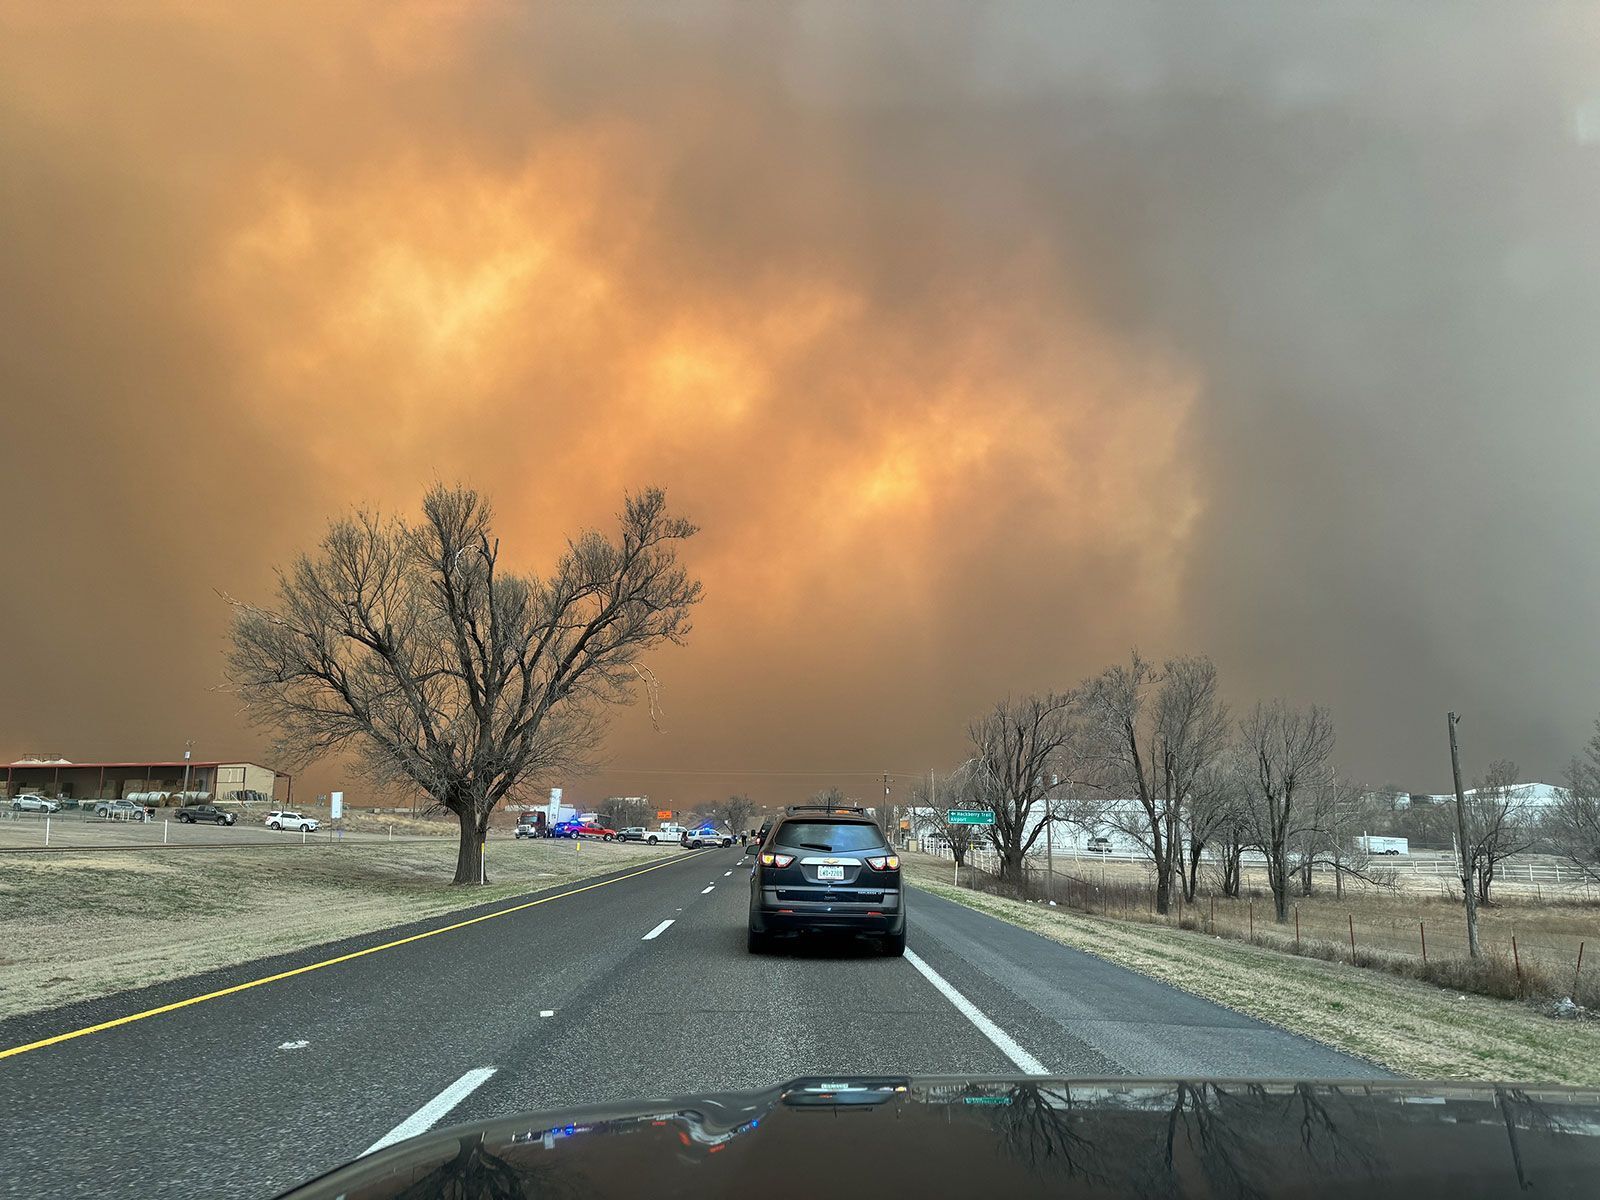 В Техасе бушуют мощные лесные пожары, людей эвакуируют: остановил работу завод по сборке ядерного оружия. Фото и видео